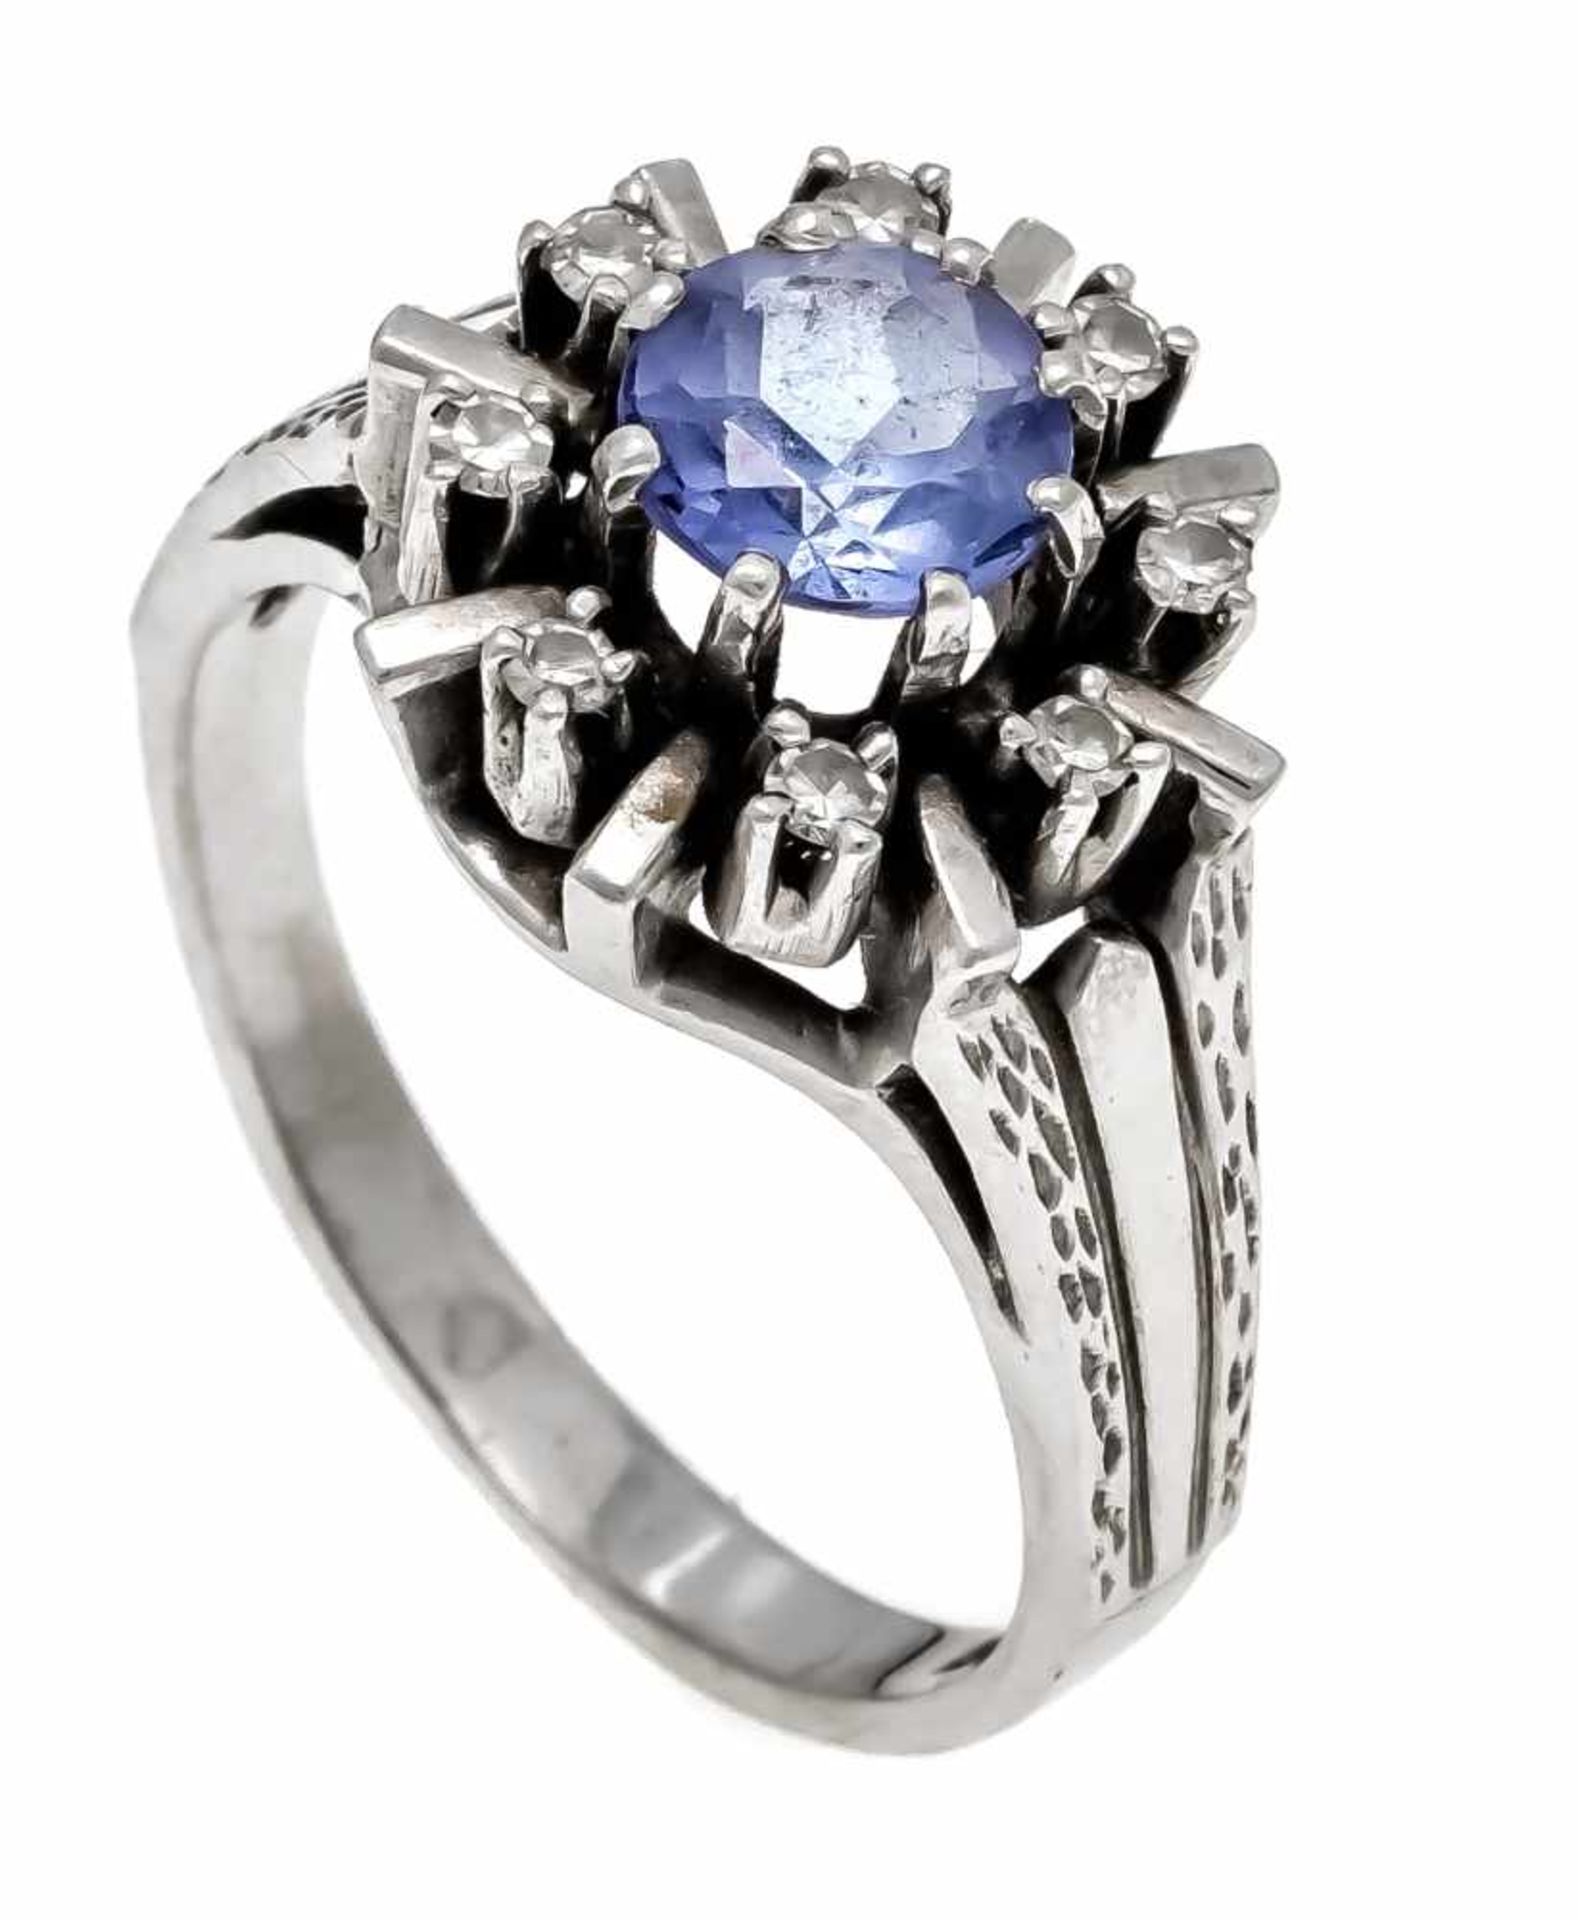 Saphir-Diamant-Ring WG 585/000 mit einem rund fac. Saphir 6,3 mm und 8 Diamanten, zus. 0,08 ct W/SI,